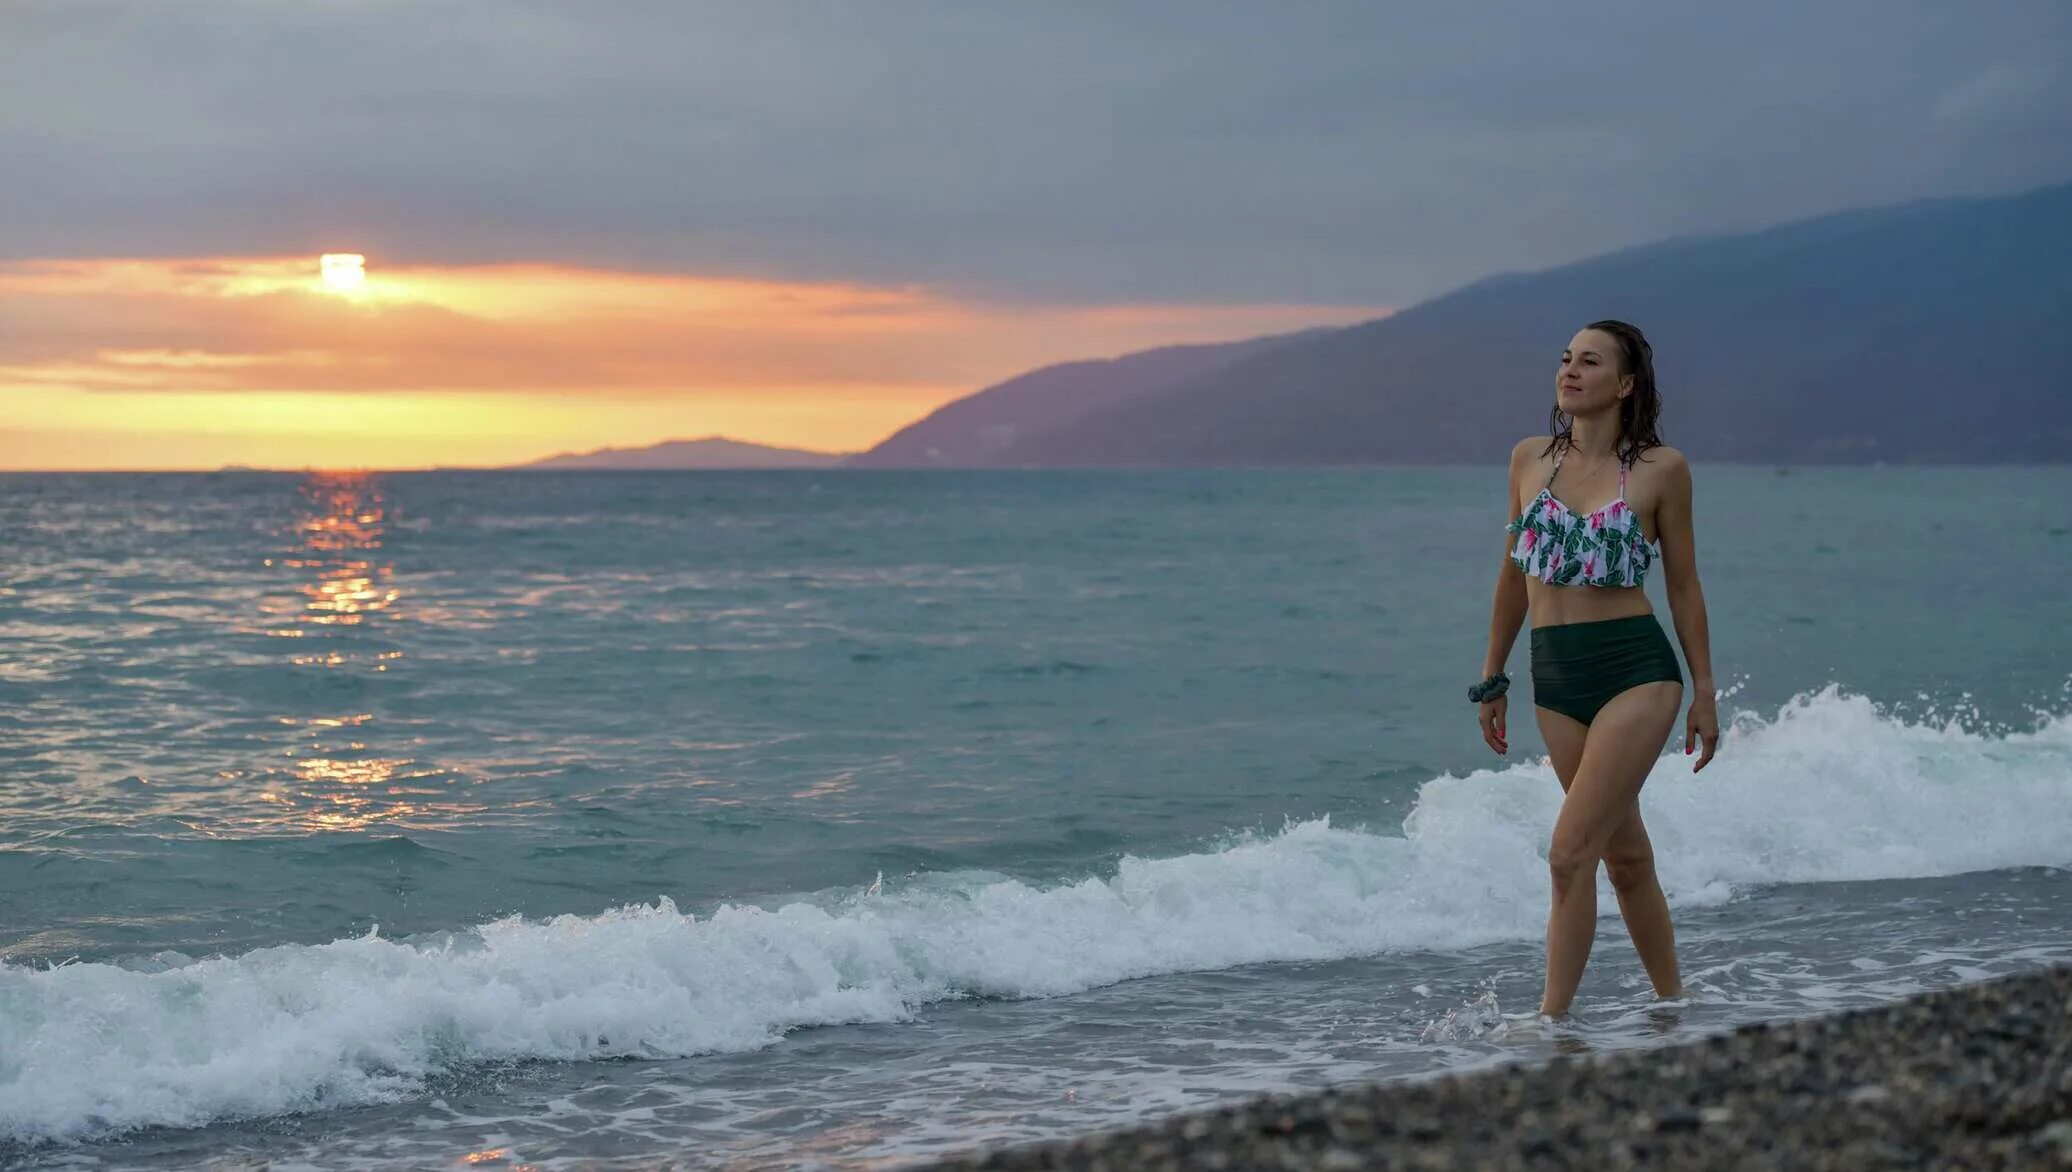 Опасно ли в абхазии. Абхазия девушки на пляже. Самые красивые девушки Абхазии. Абхазия 2015 год море. Абхазия море и девушка на берегу.